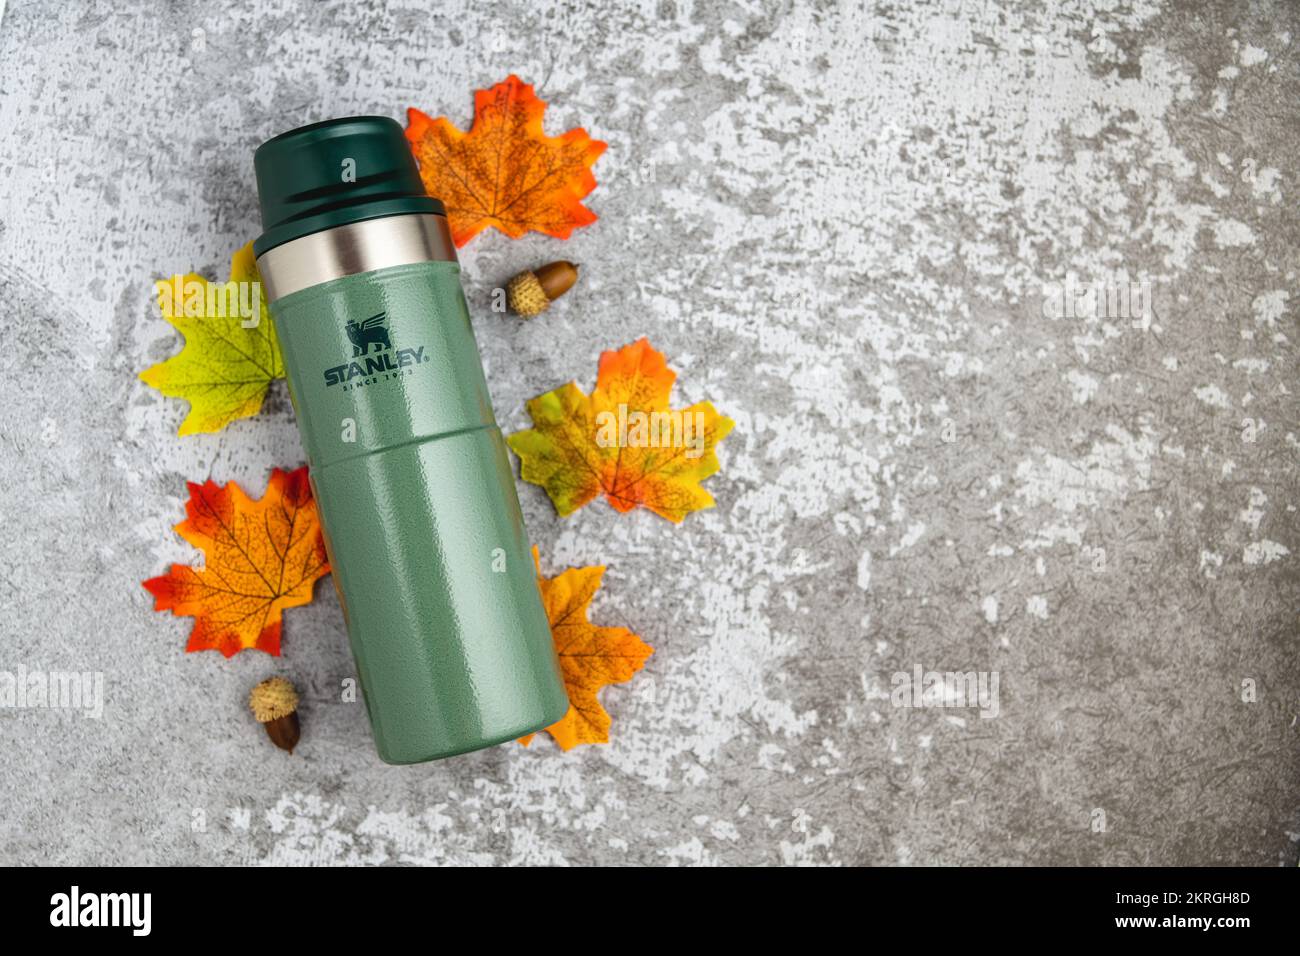 Antalya, Turquie - 28 novembre 2022: Stanley action Trigger thermos mug avec des feuilles dans les couleurs d'automne sur fond de pierre Banque D'Images